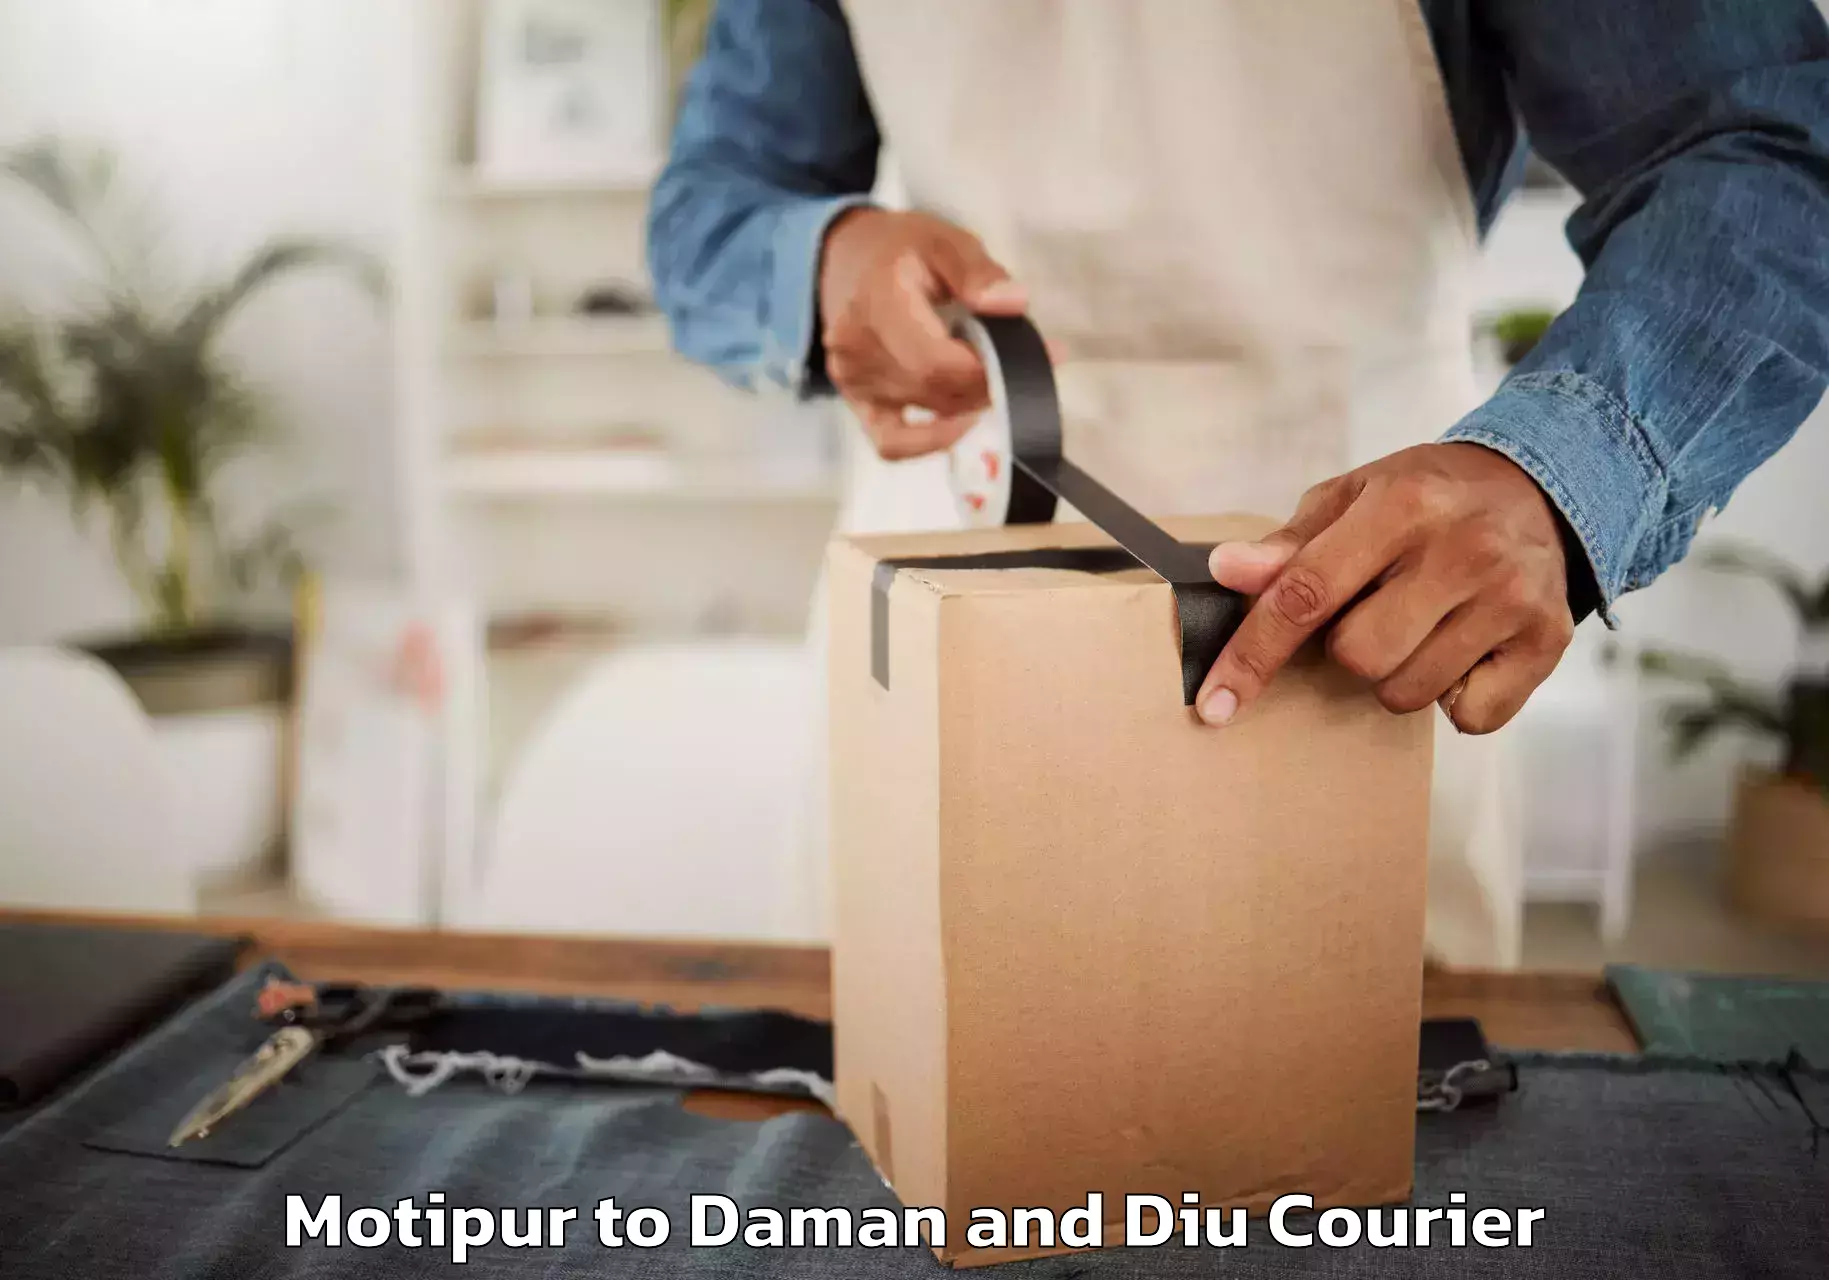 Furniture transport service Motipur to Diu